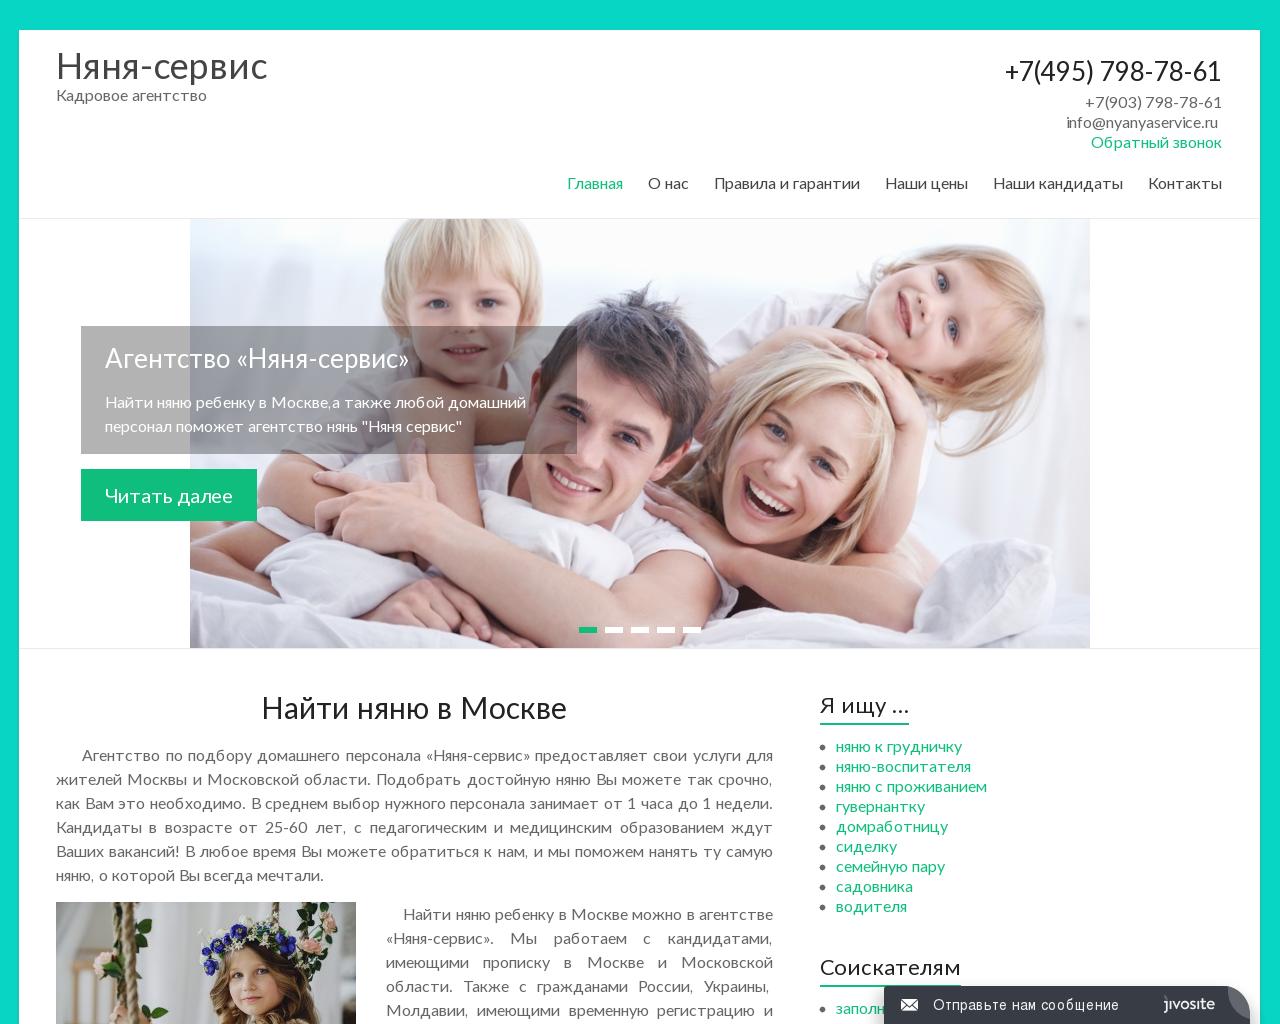 Изображение сайта nyanyaservice.ru в разрешении 1280x1024